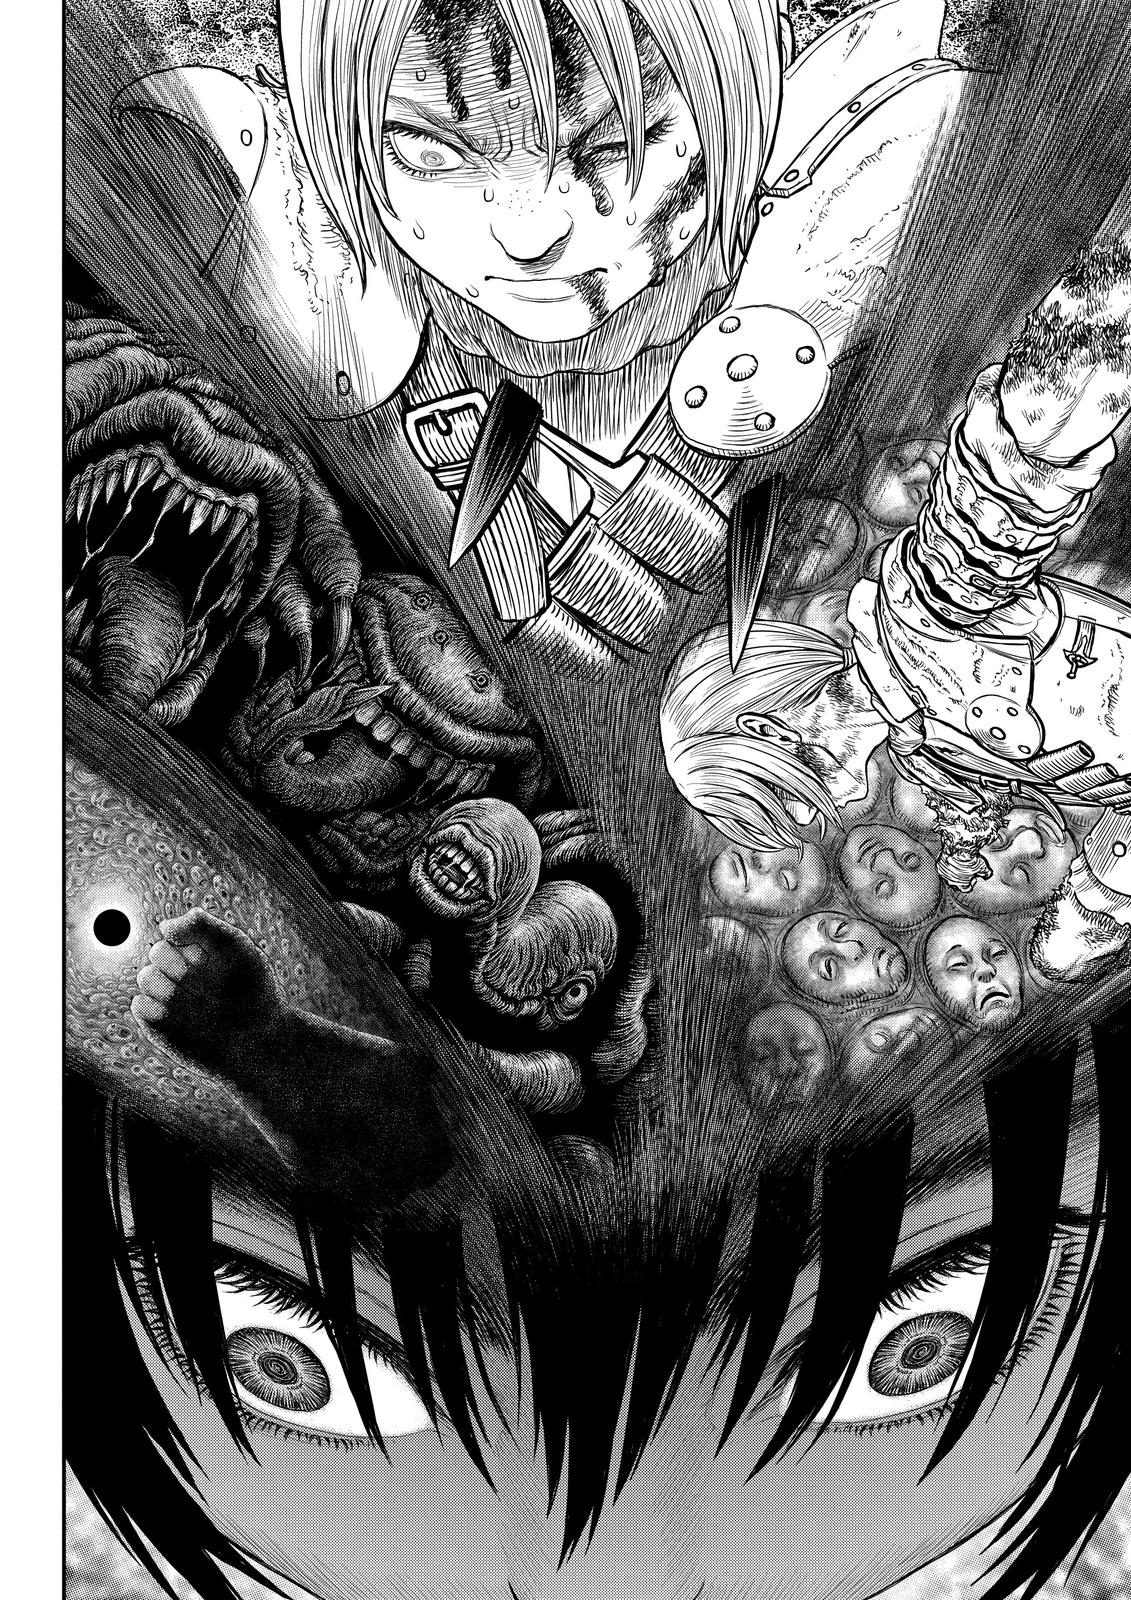 Berserk Manga Chapter 359 image 18